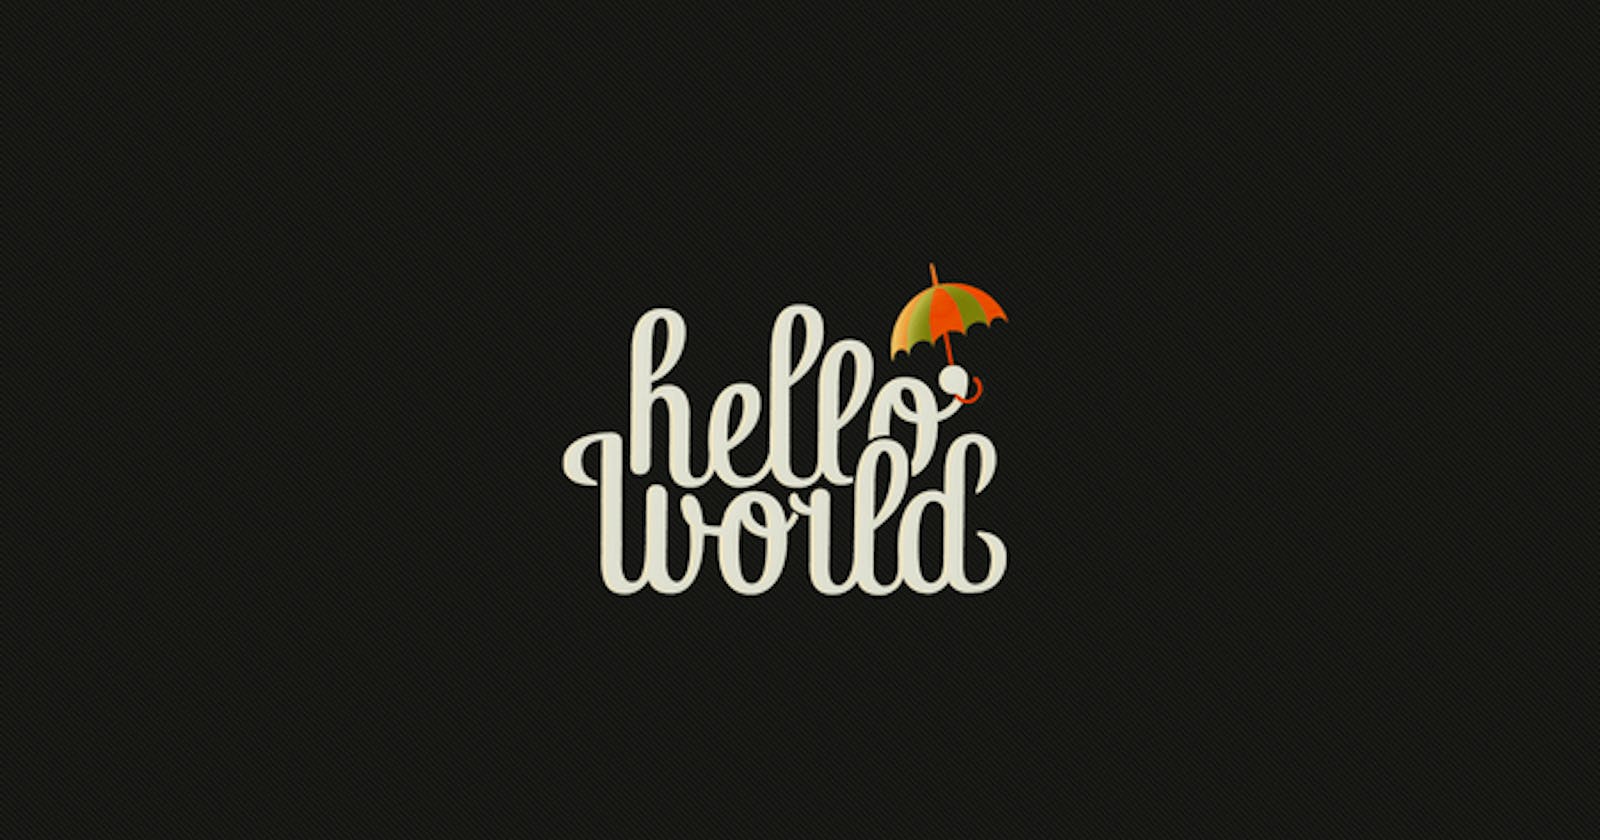 Hello World!